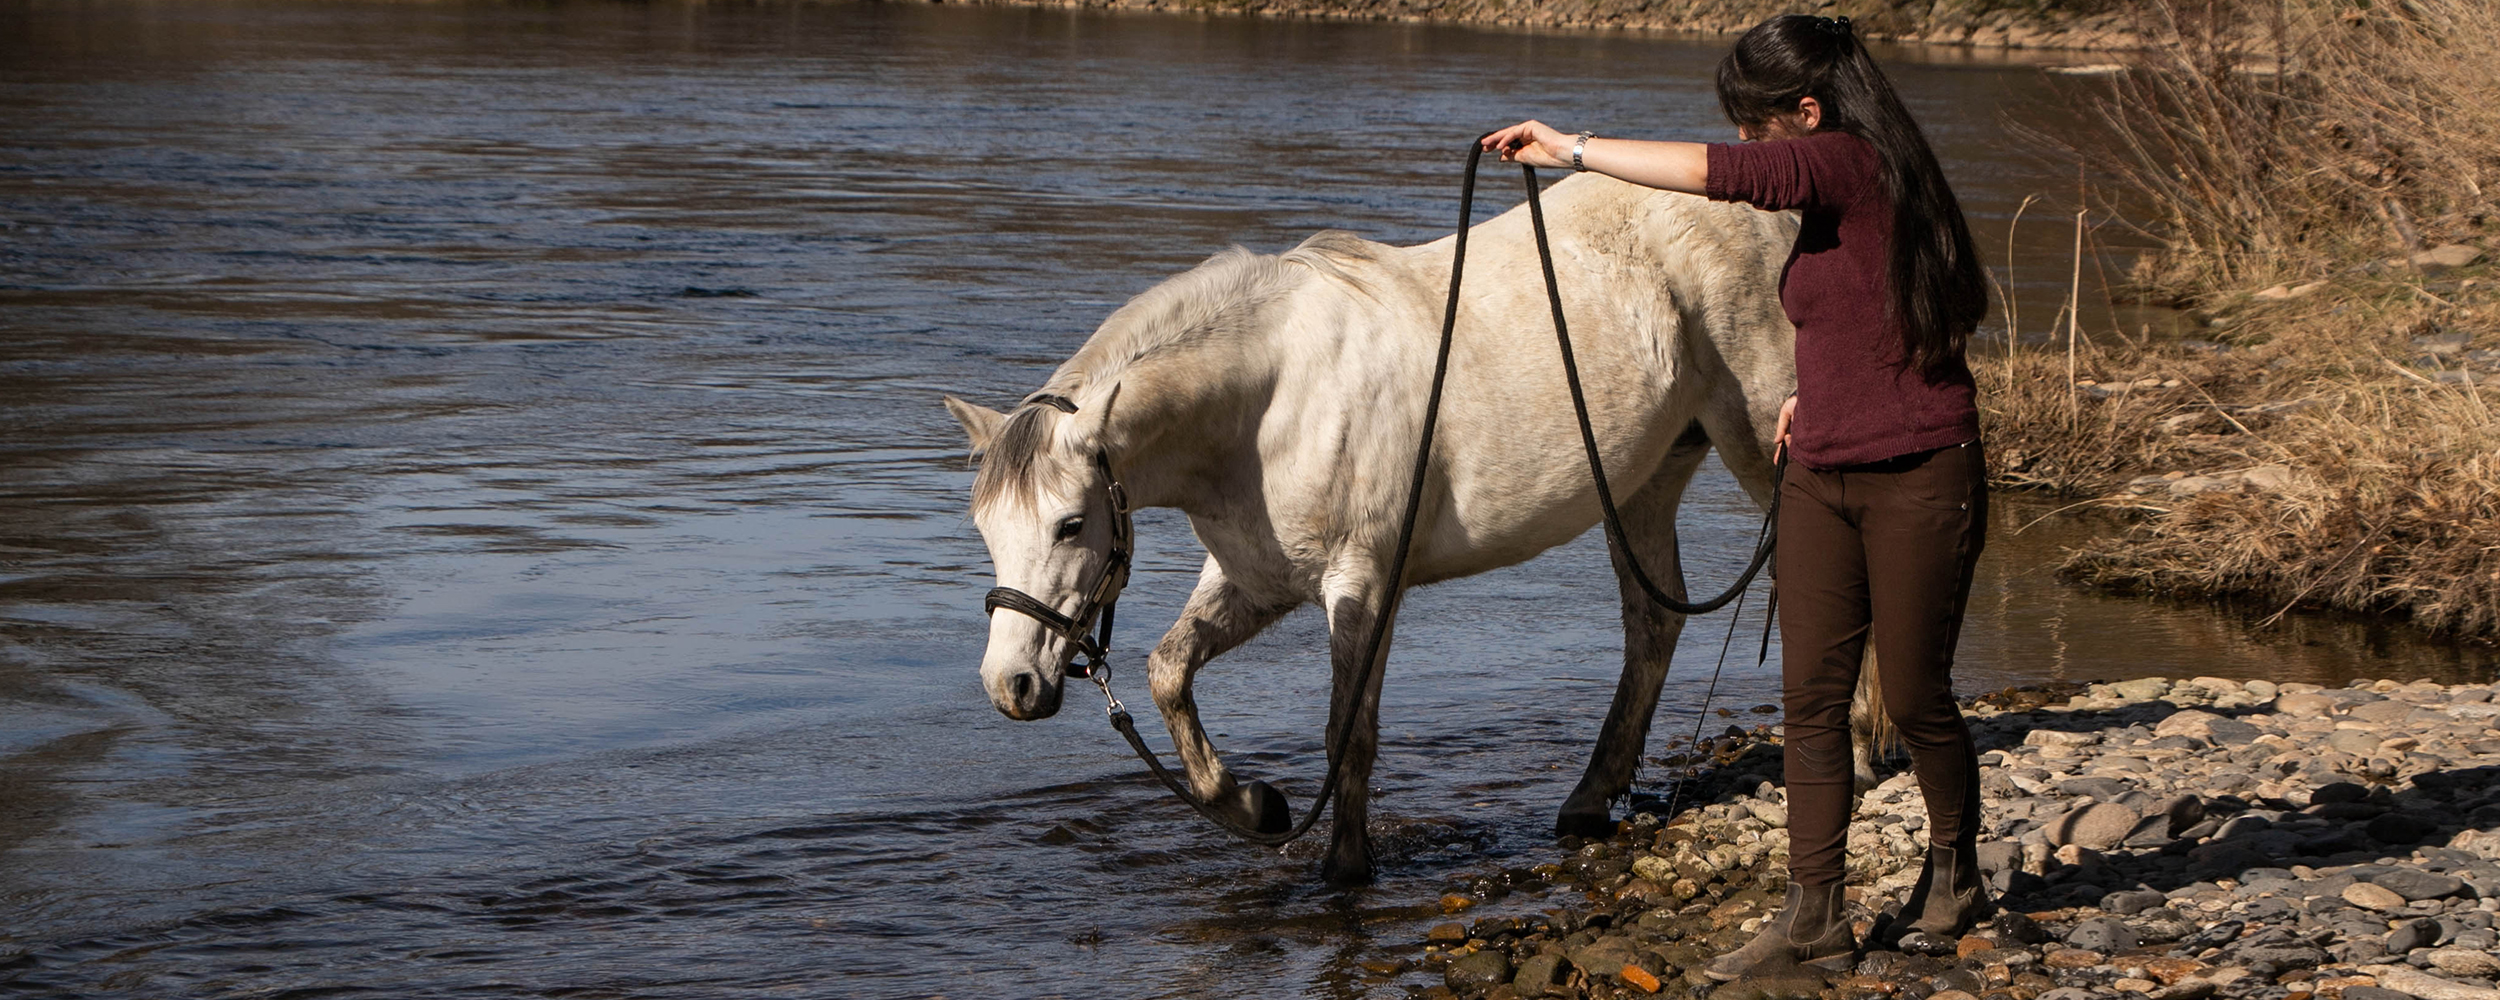 education ethologie travail exterieur embuche desensibilisation chevaux cheval poney poneys